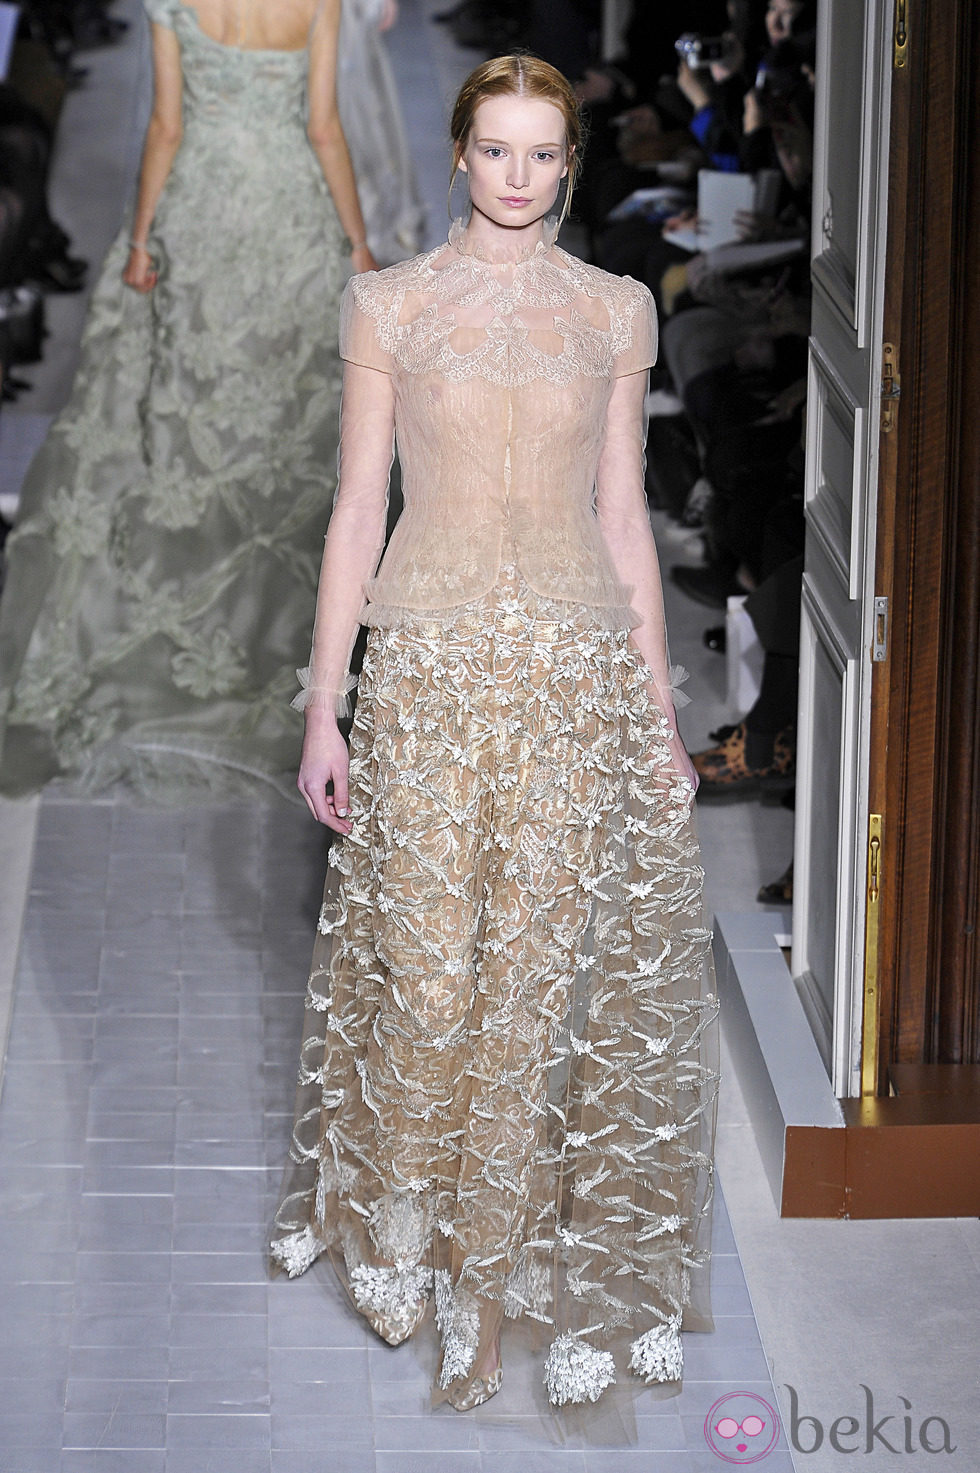 Vestido con transparencias de la colección primavera/verano 2013 de Valentino en la Semana de la Alta Costura de París